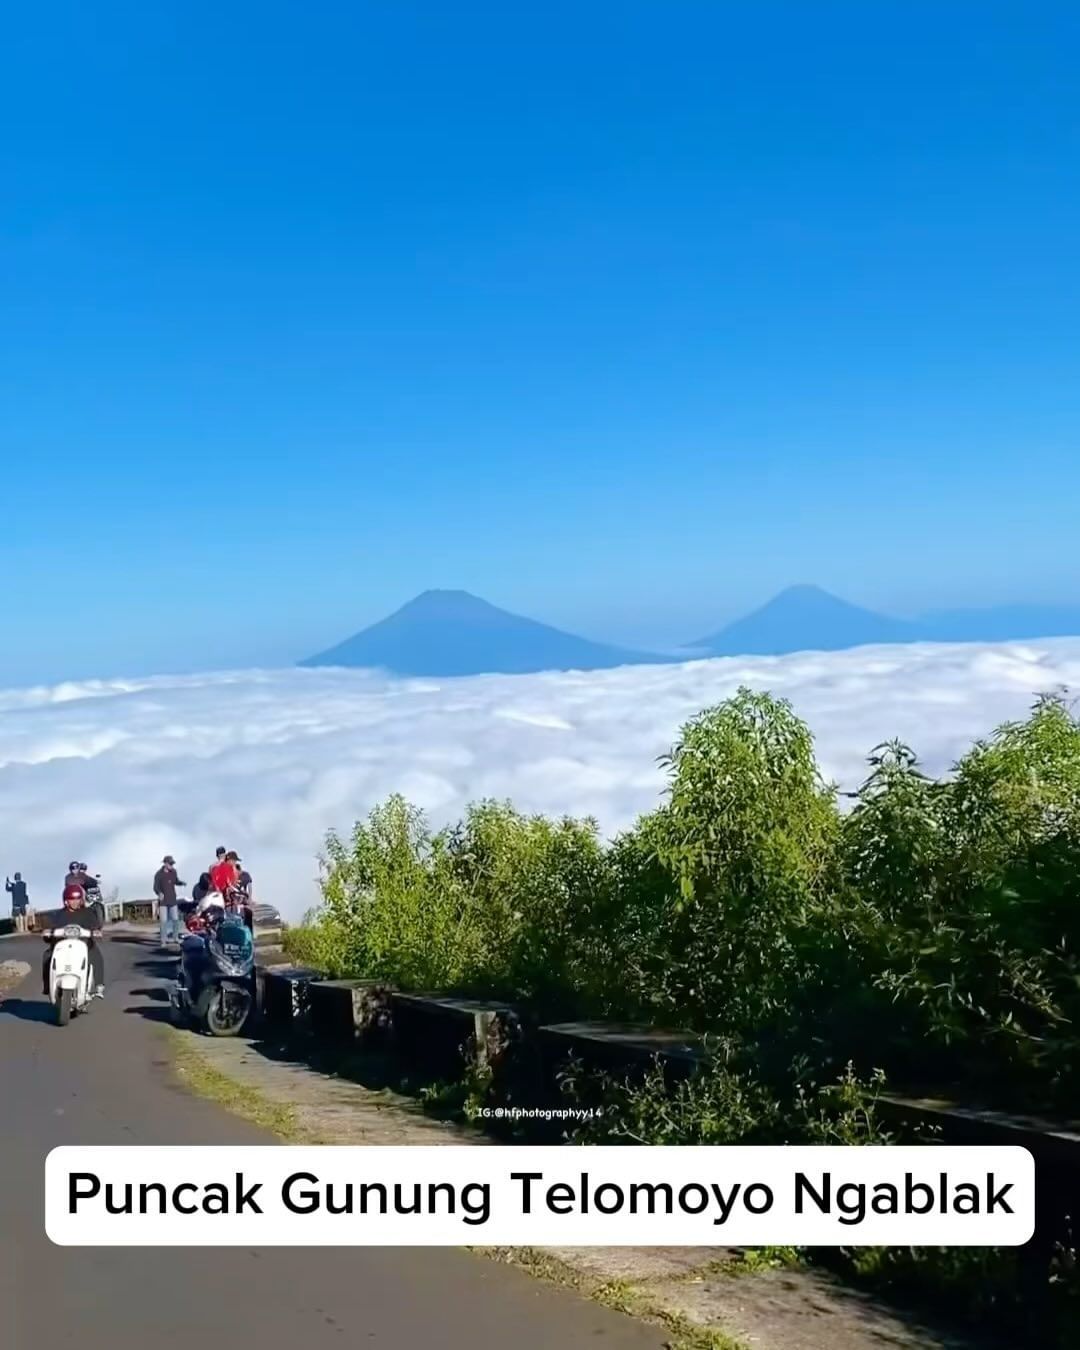 Puncak Gunung Telomoyo Ngablak